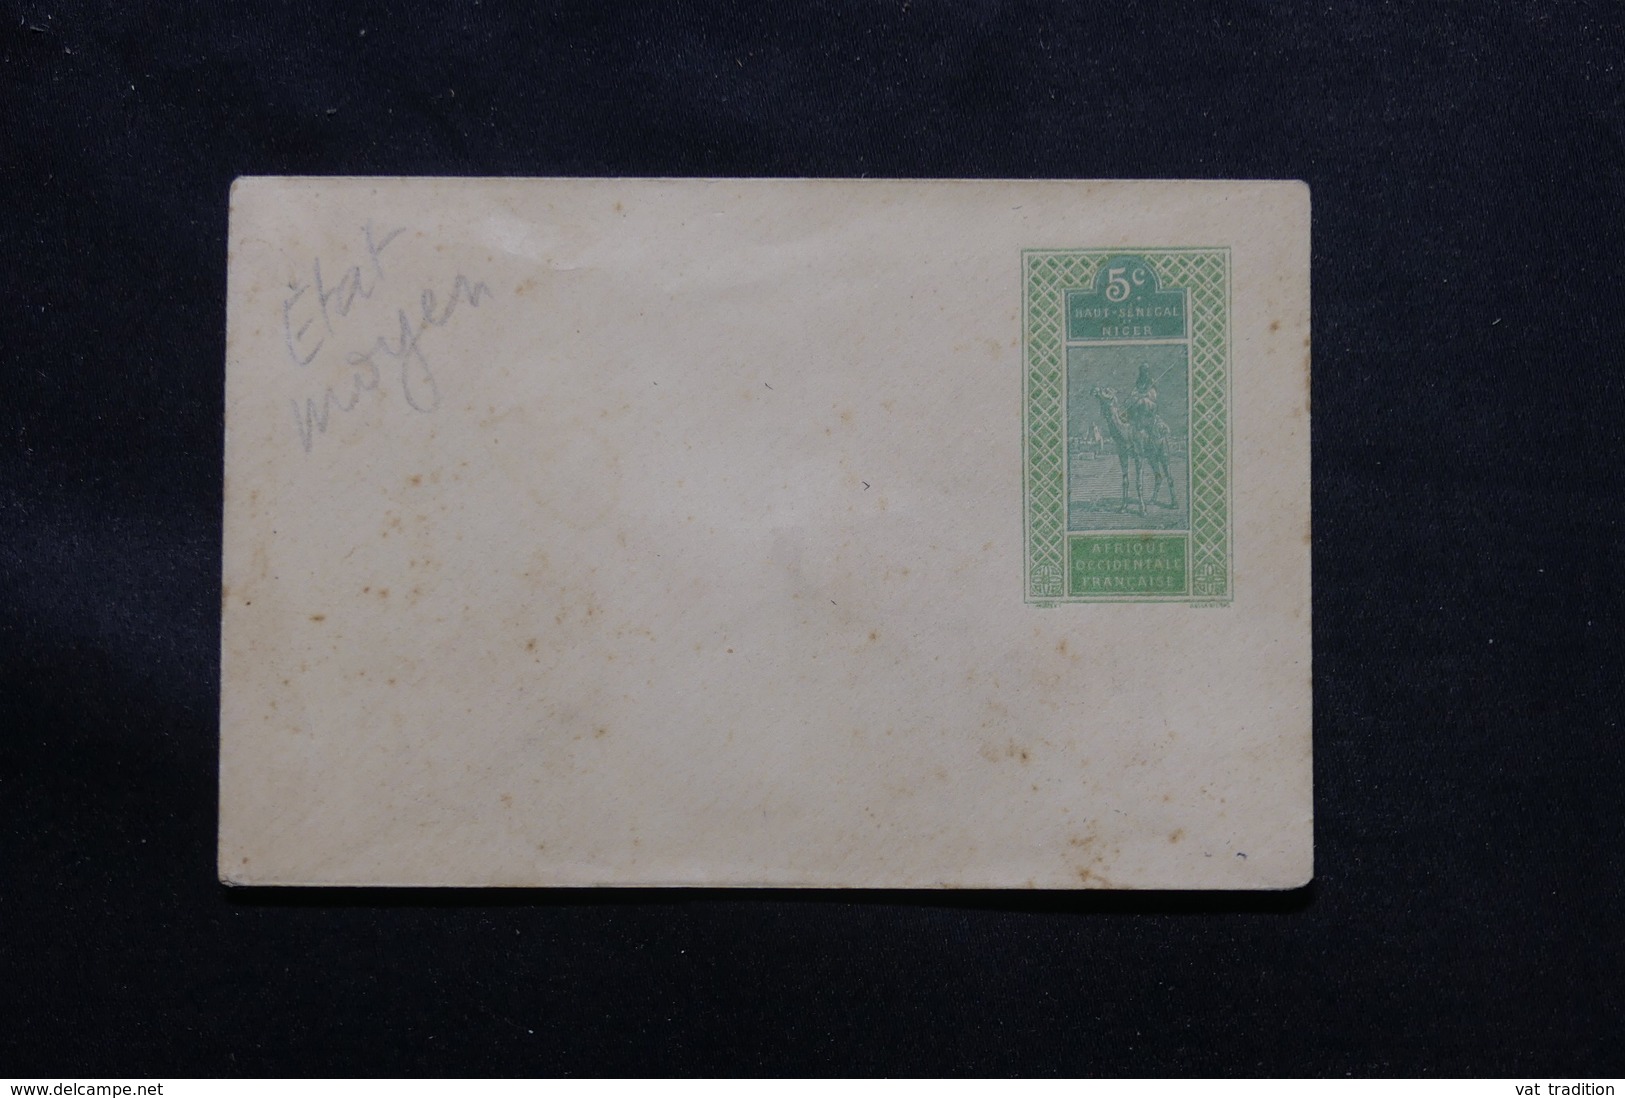 HAUT SÉNÉGAL ET NIGER - Entier Postal ( Enveloppe ) Au Type Méhariste, Non Circulé - L 60249 - Covers & Documents